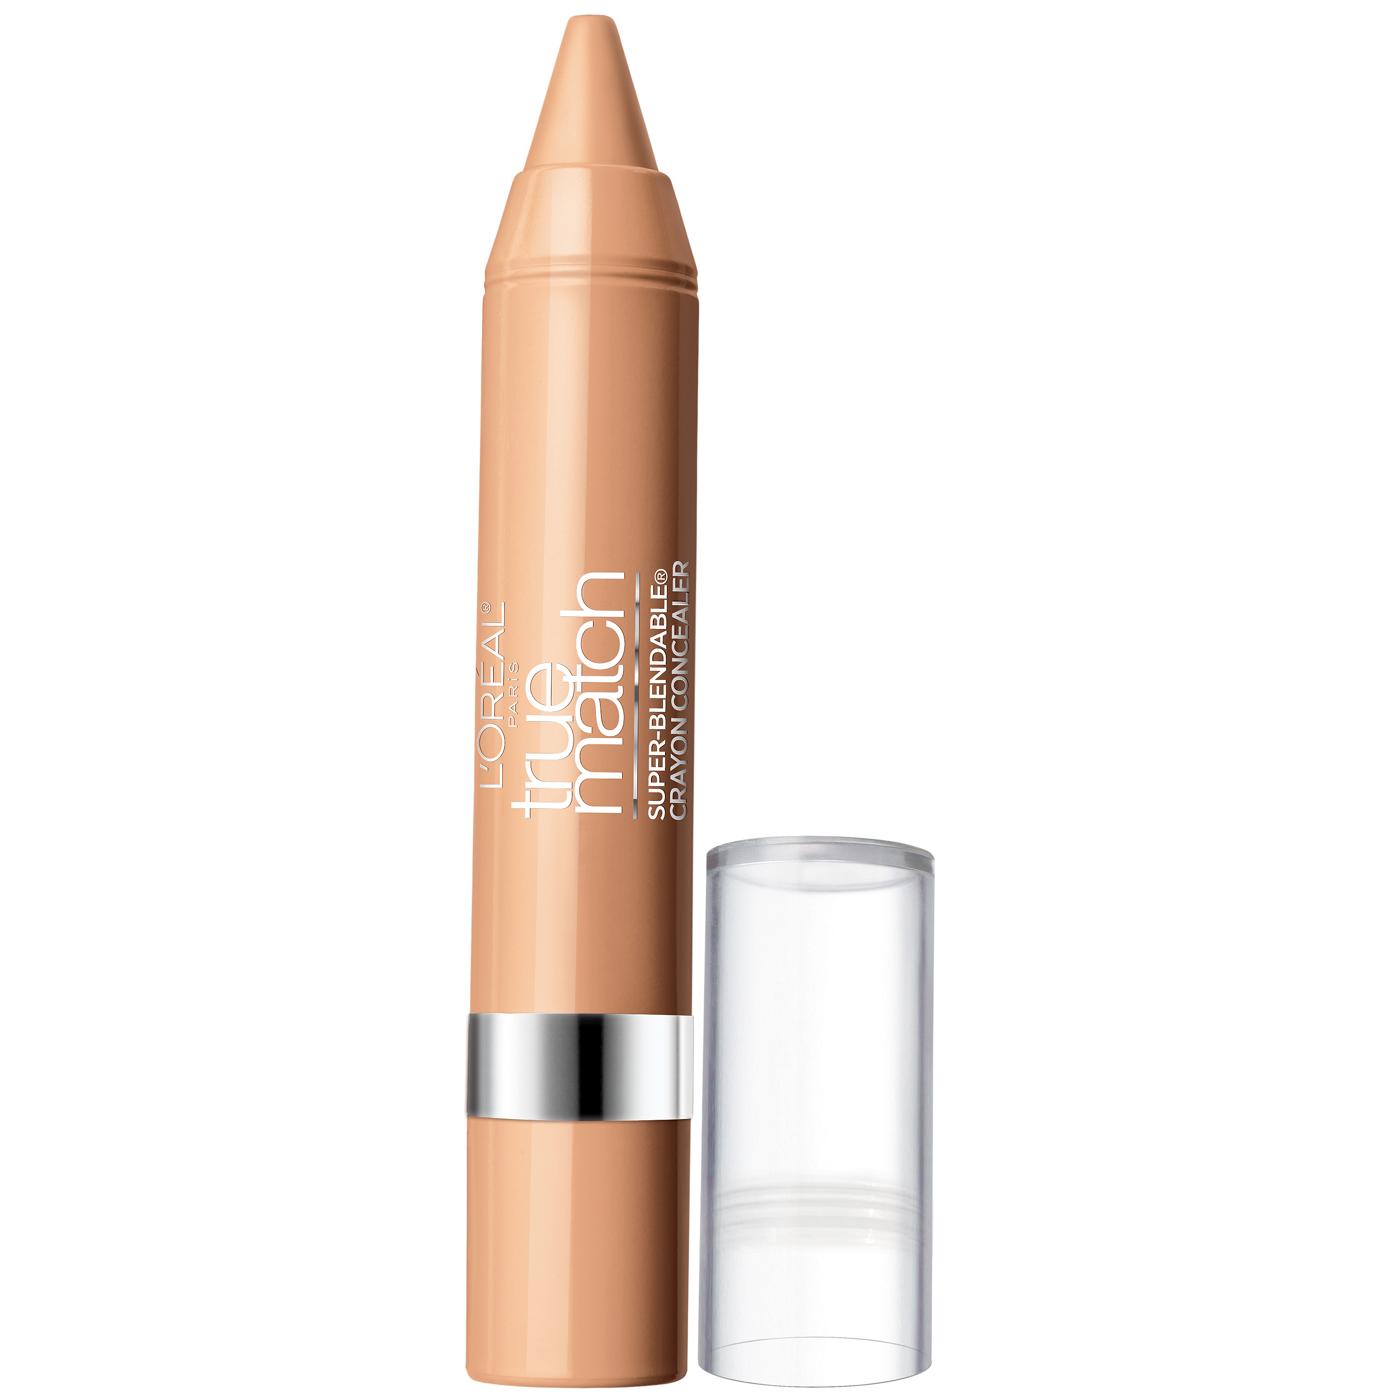 L'Oréal Paris True Match Super Blendable Crayon Concealer Light/Medium Warm; image 1 of 2